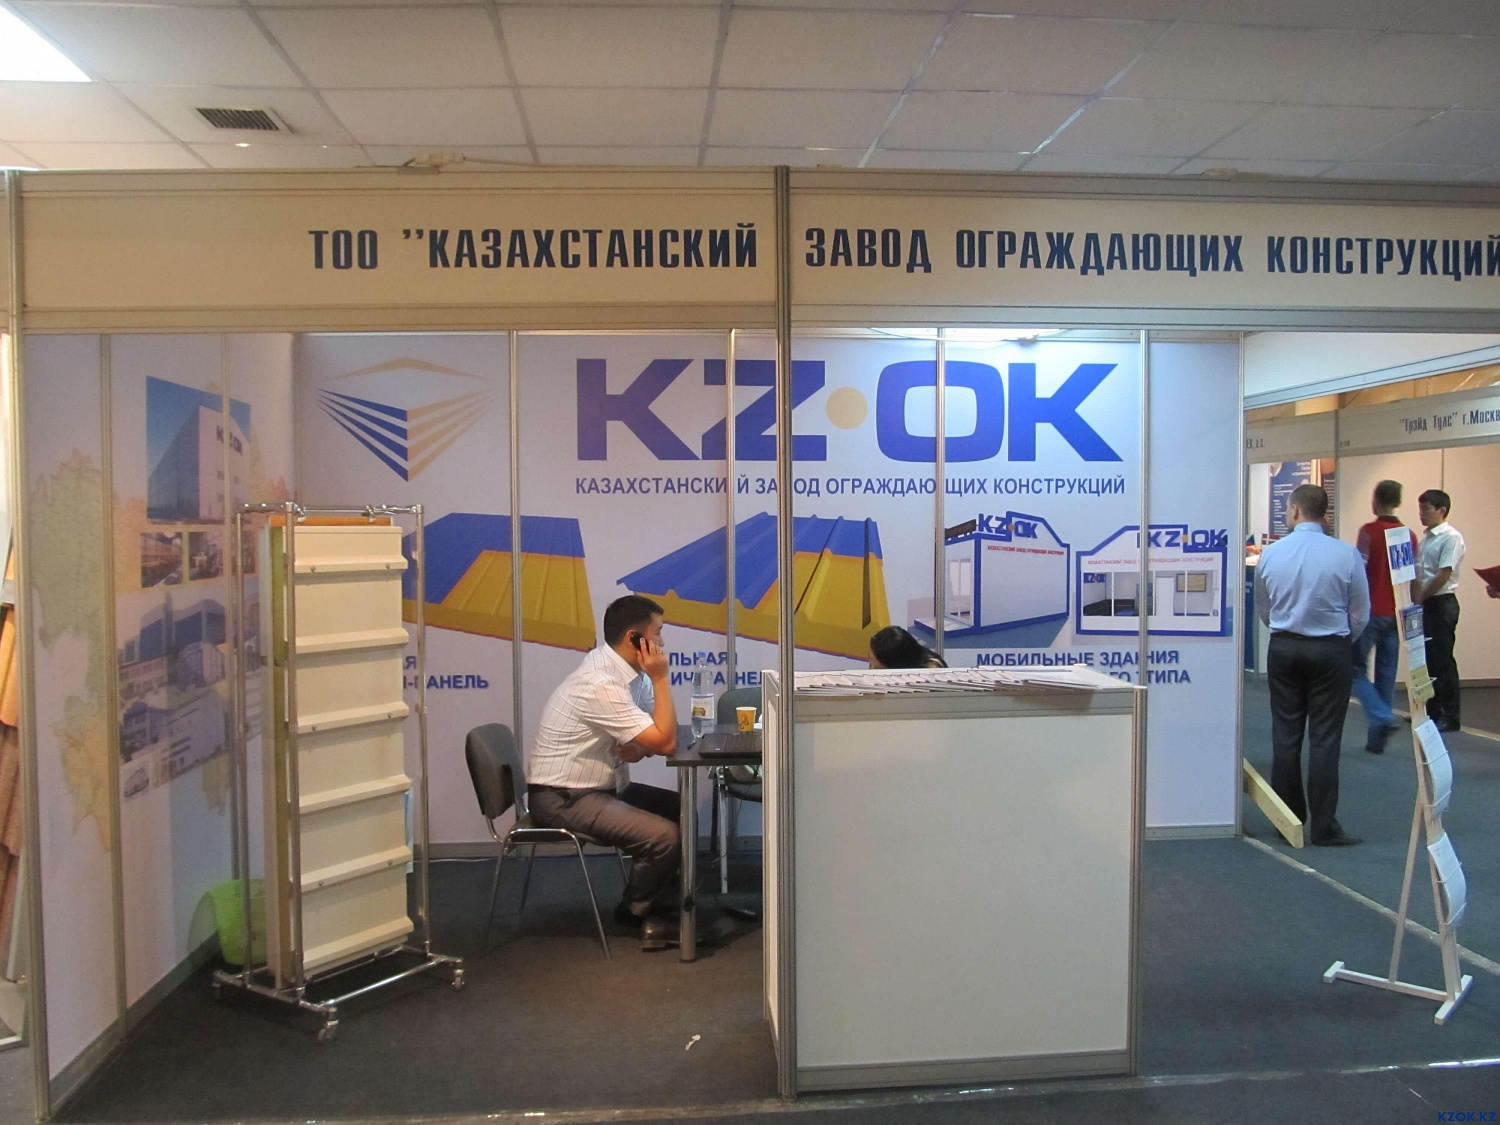 Презентация ТОО "Казахстанский завод ограждающих конструкций"